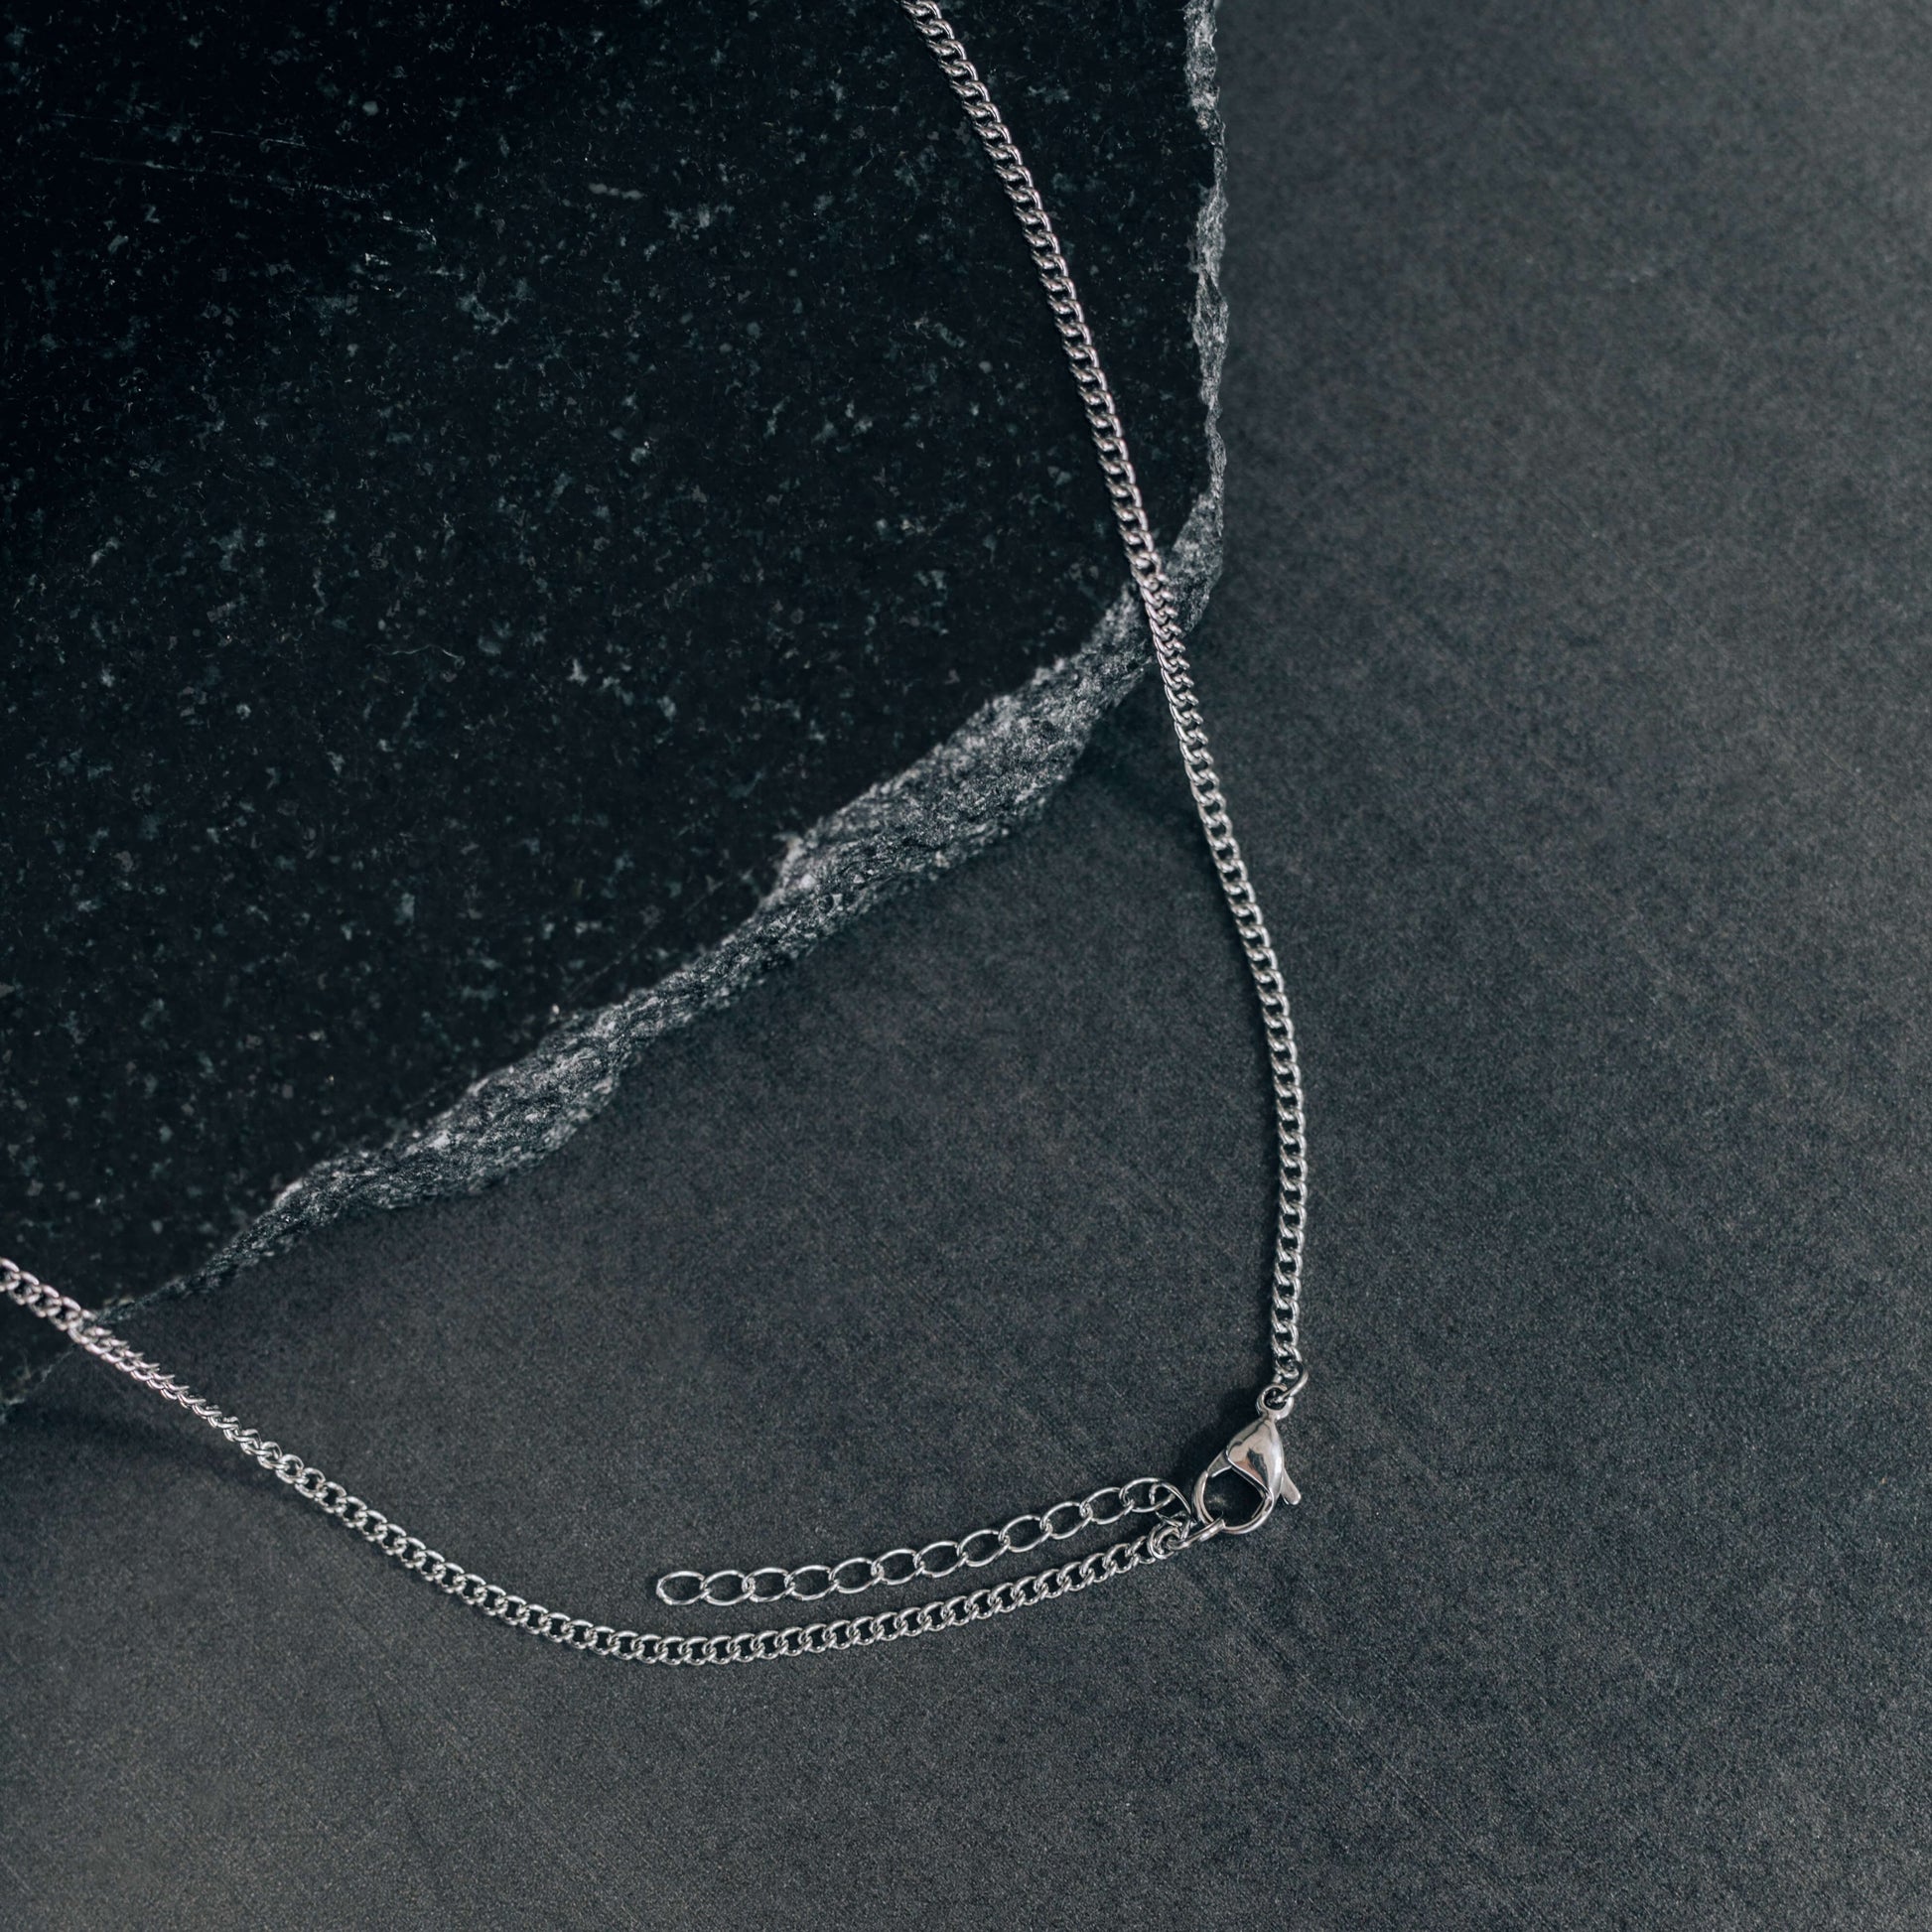 Silver Black Drop Pendant Necklace For Men or Women - Boutique Wear RENN inc